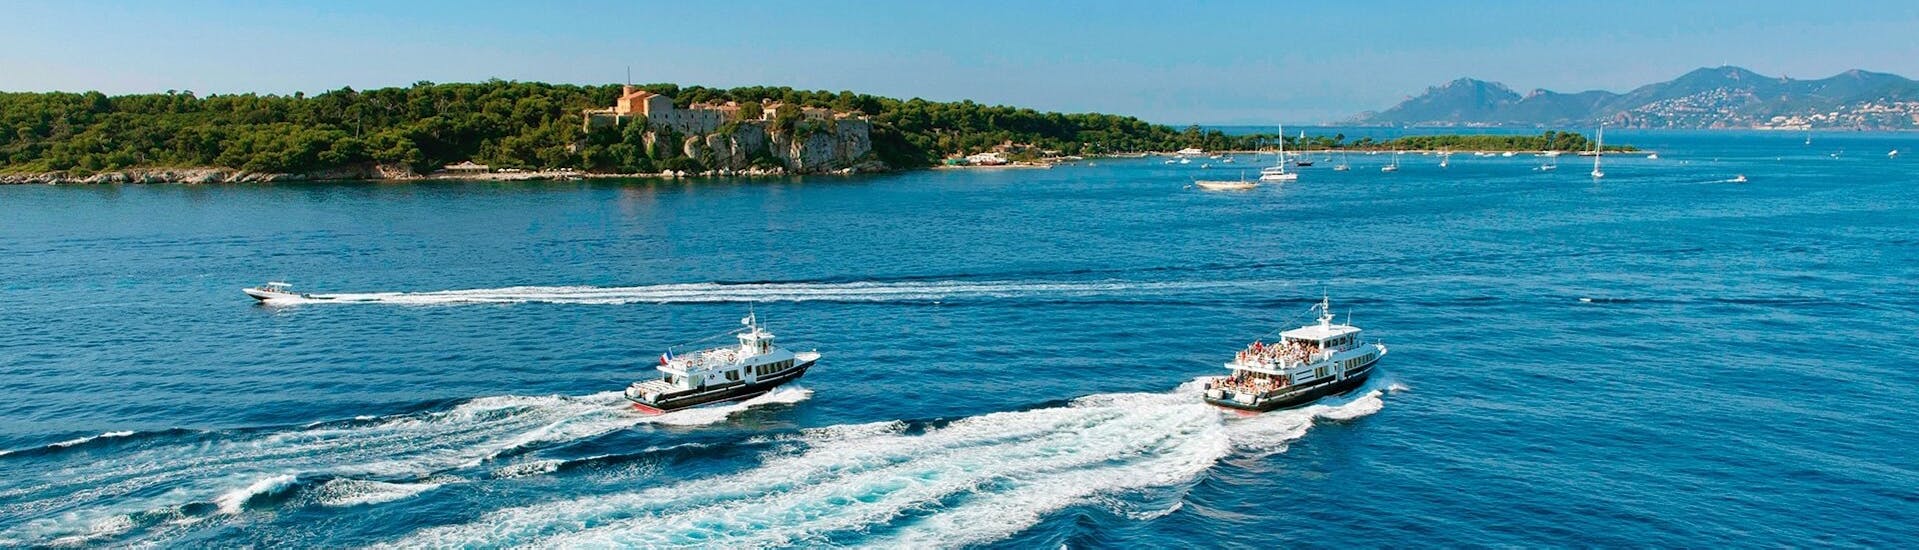 Vista de los barcos durante el traslado en barco de Cannes a la isla de Sainte-Marguerite con Trans Côte d'Azur.